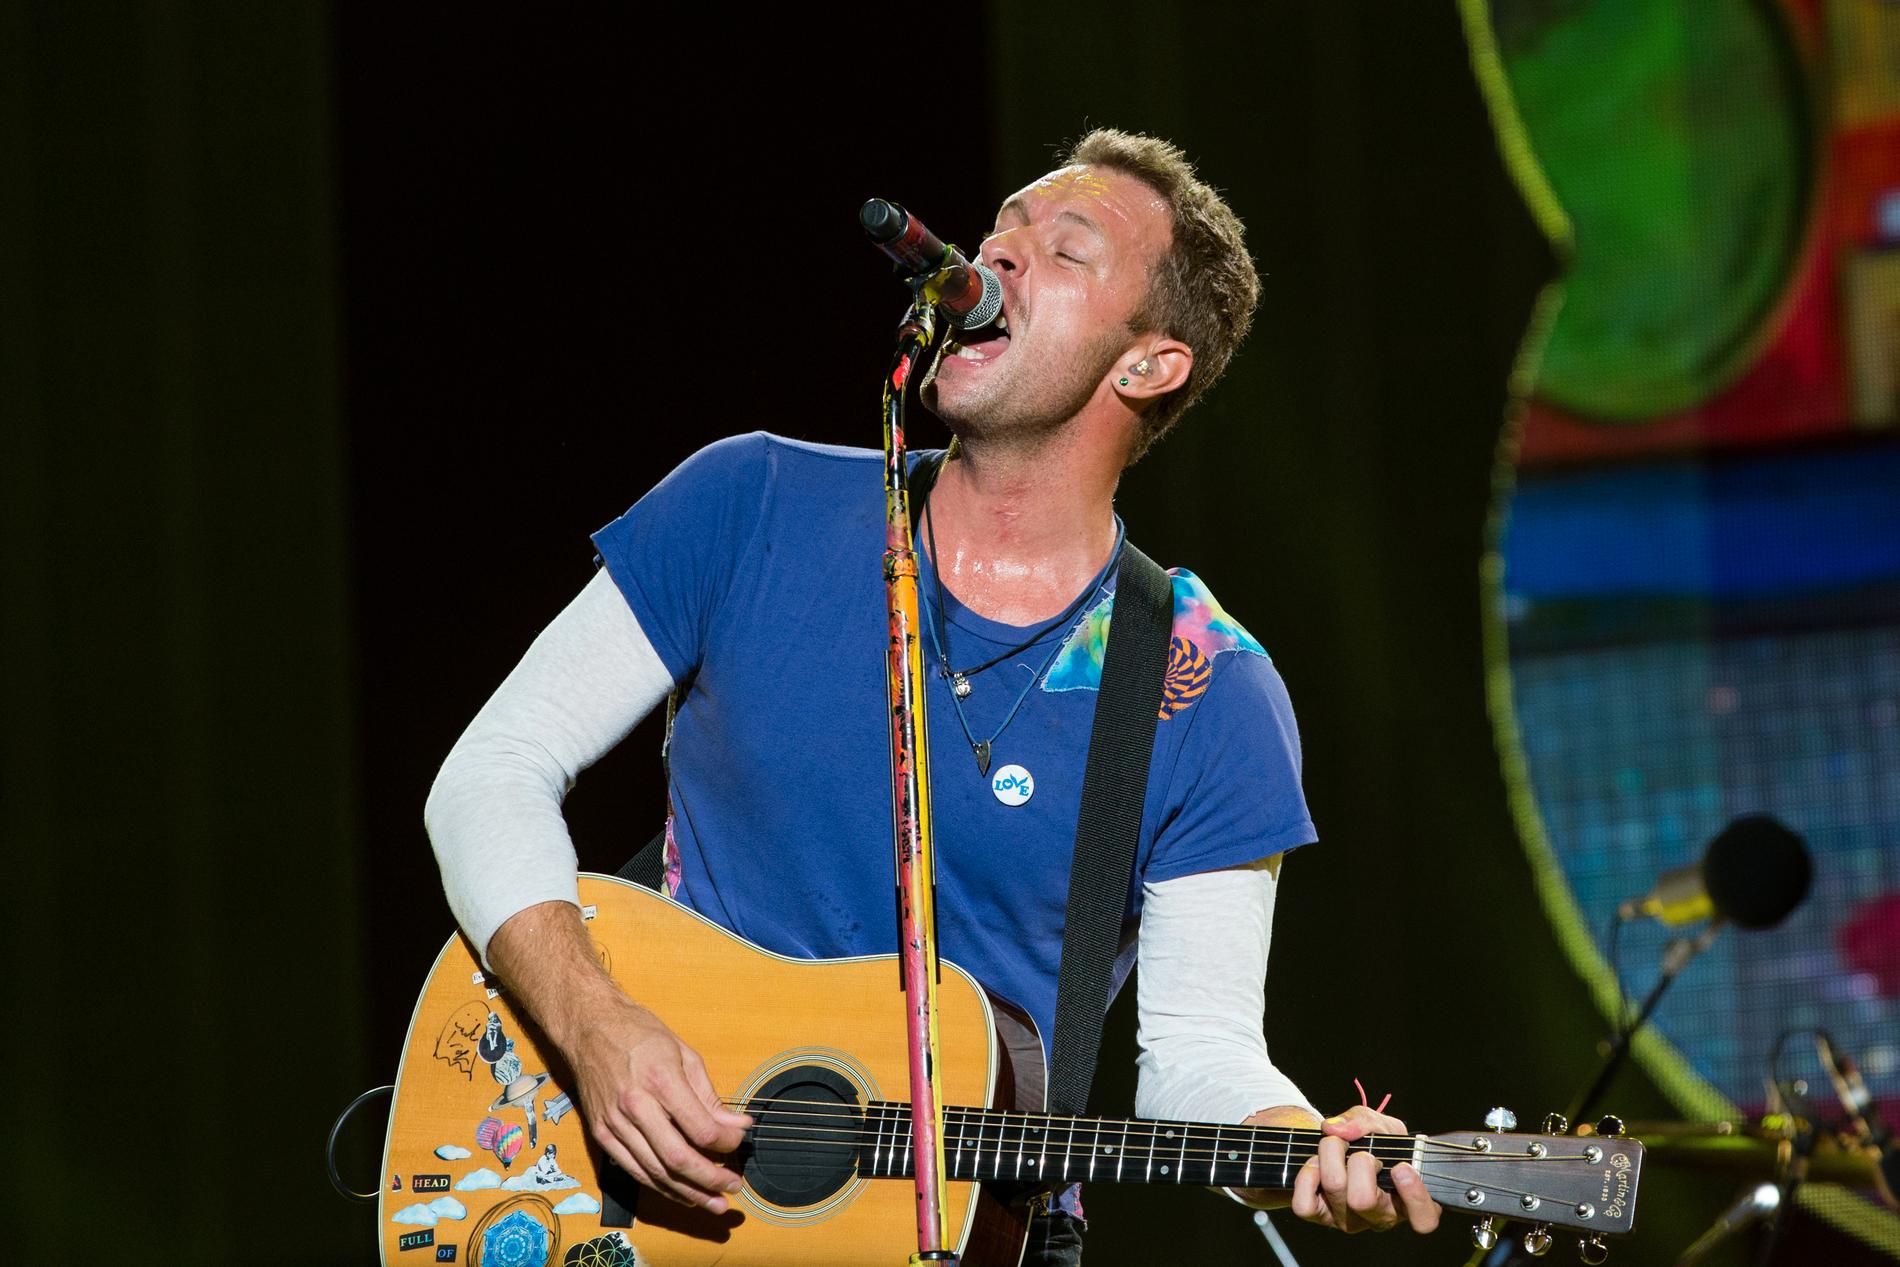 Coldplay-sångaren Chris Martin hör till de drivande bakom skivan ”Global citizen ep1”, som släpps på fredag och samlar in pengar till kampen mot extrem fattigdom.